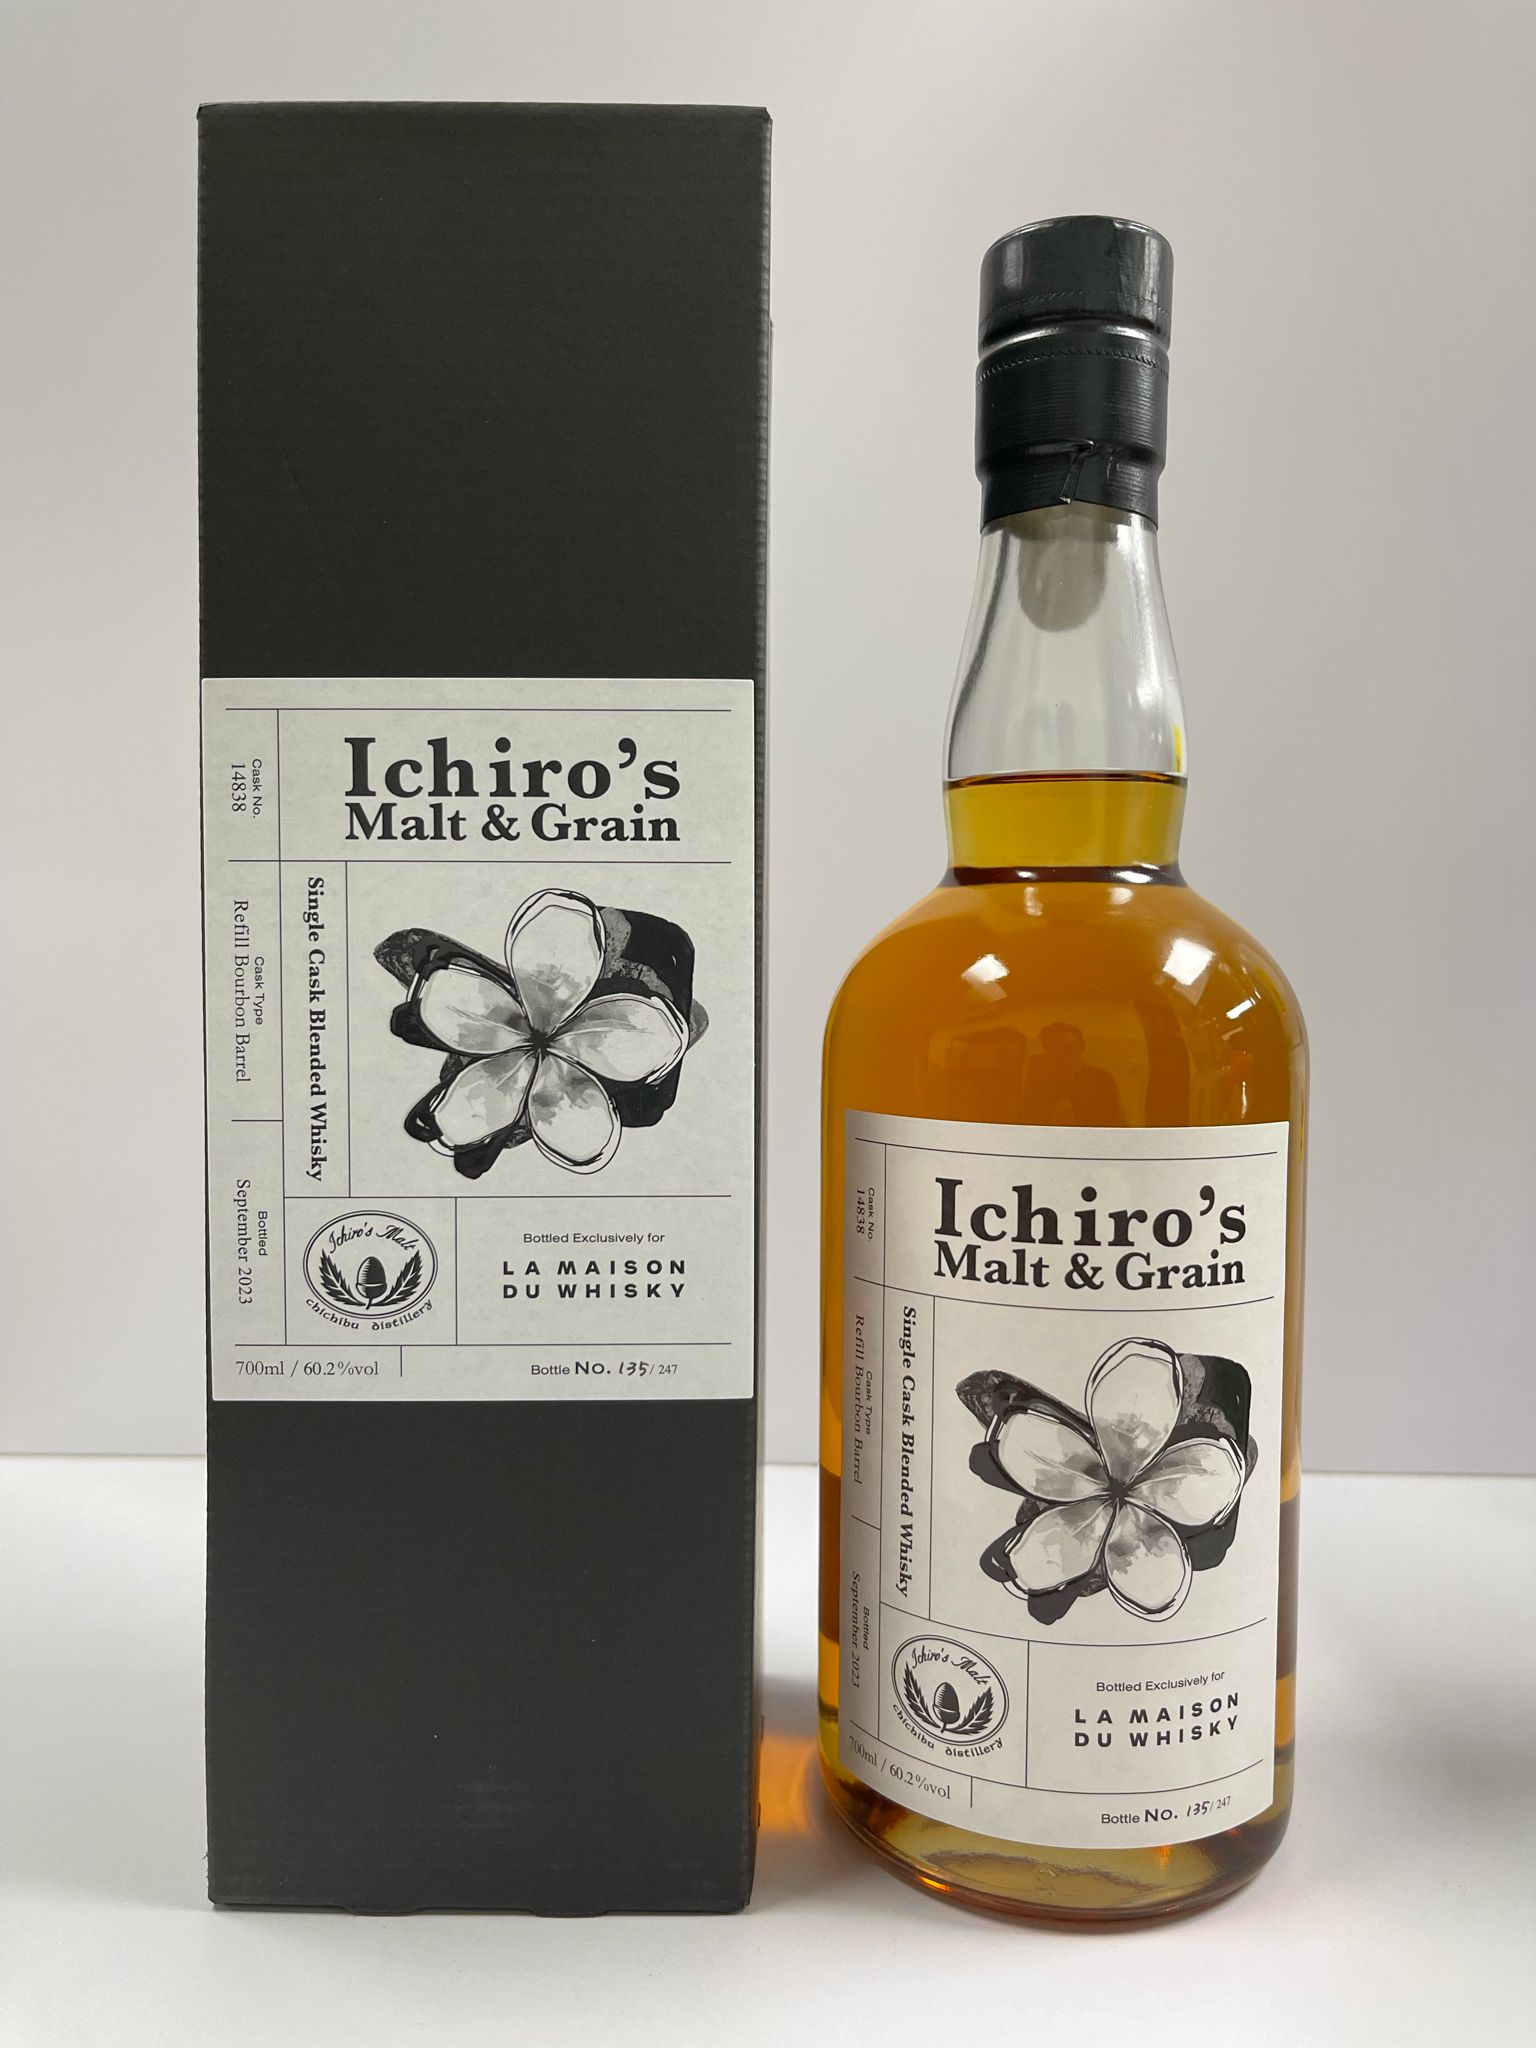 Popular - Ichiro's Malt & Grain Refill Bourbon Barrel #14838 Single Cask Blended Whisky LMDW Singapore Flower Series #1 70cl 60.2%